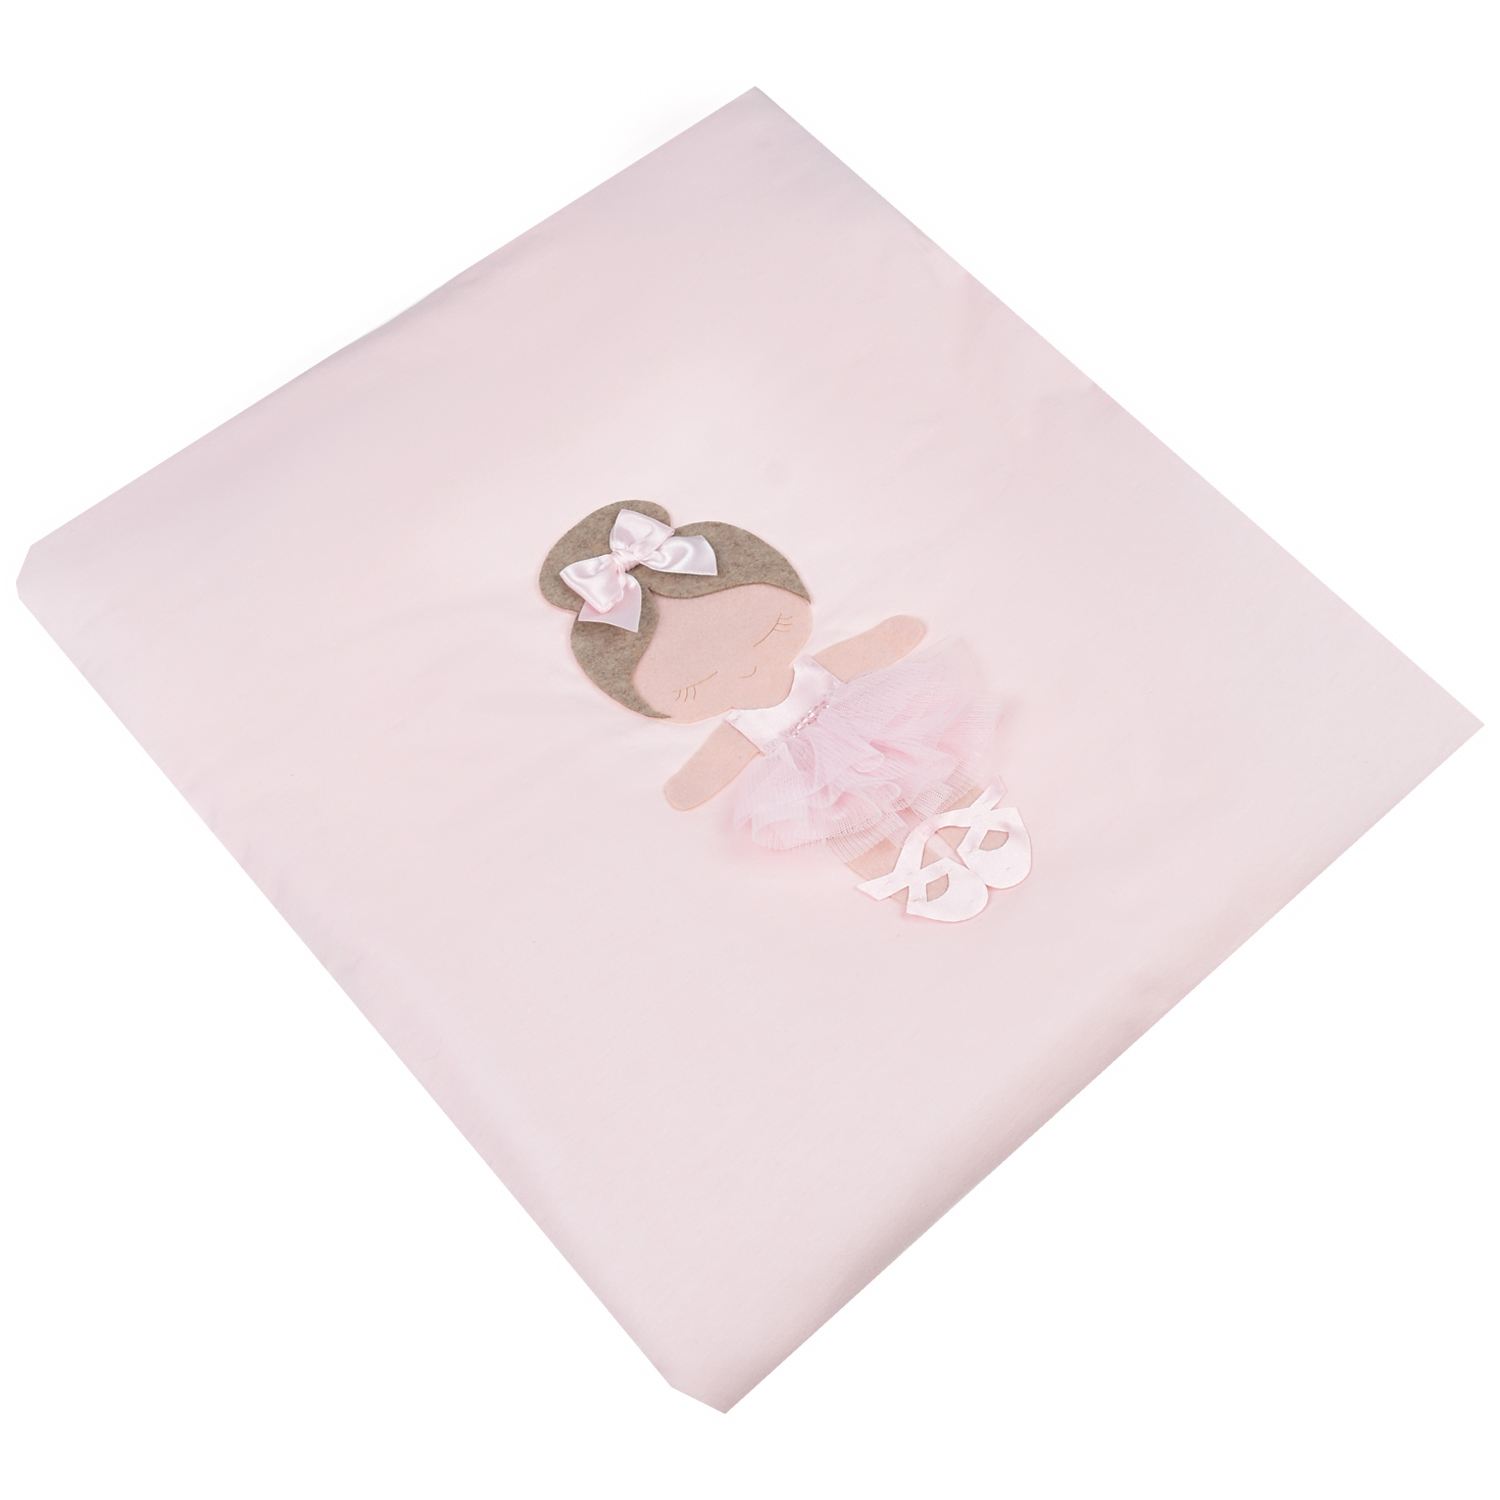 Розовое одеяло с аппликацией "балерина", 70x80 см Story Loris, размер unica, цвет розовый - фото 1